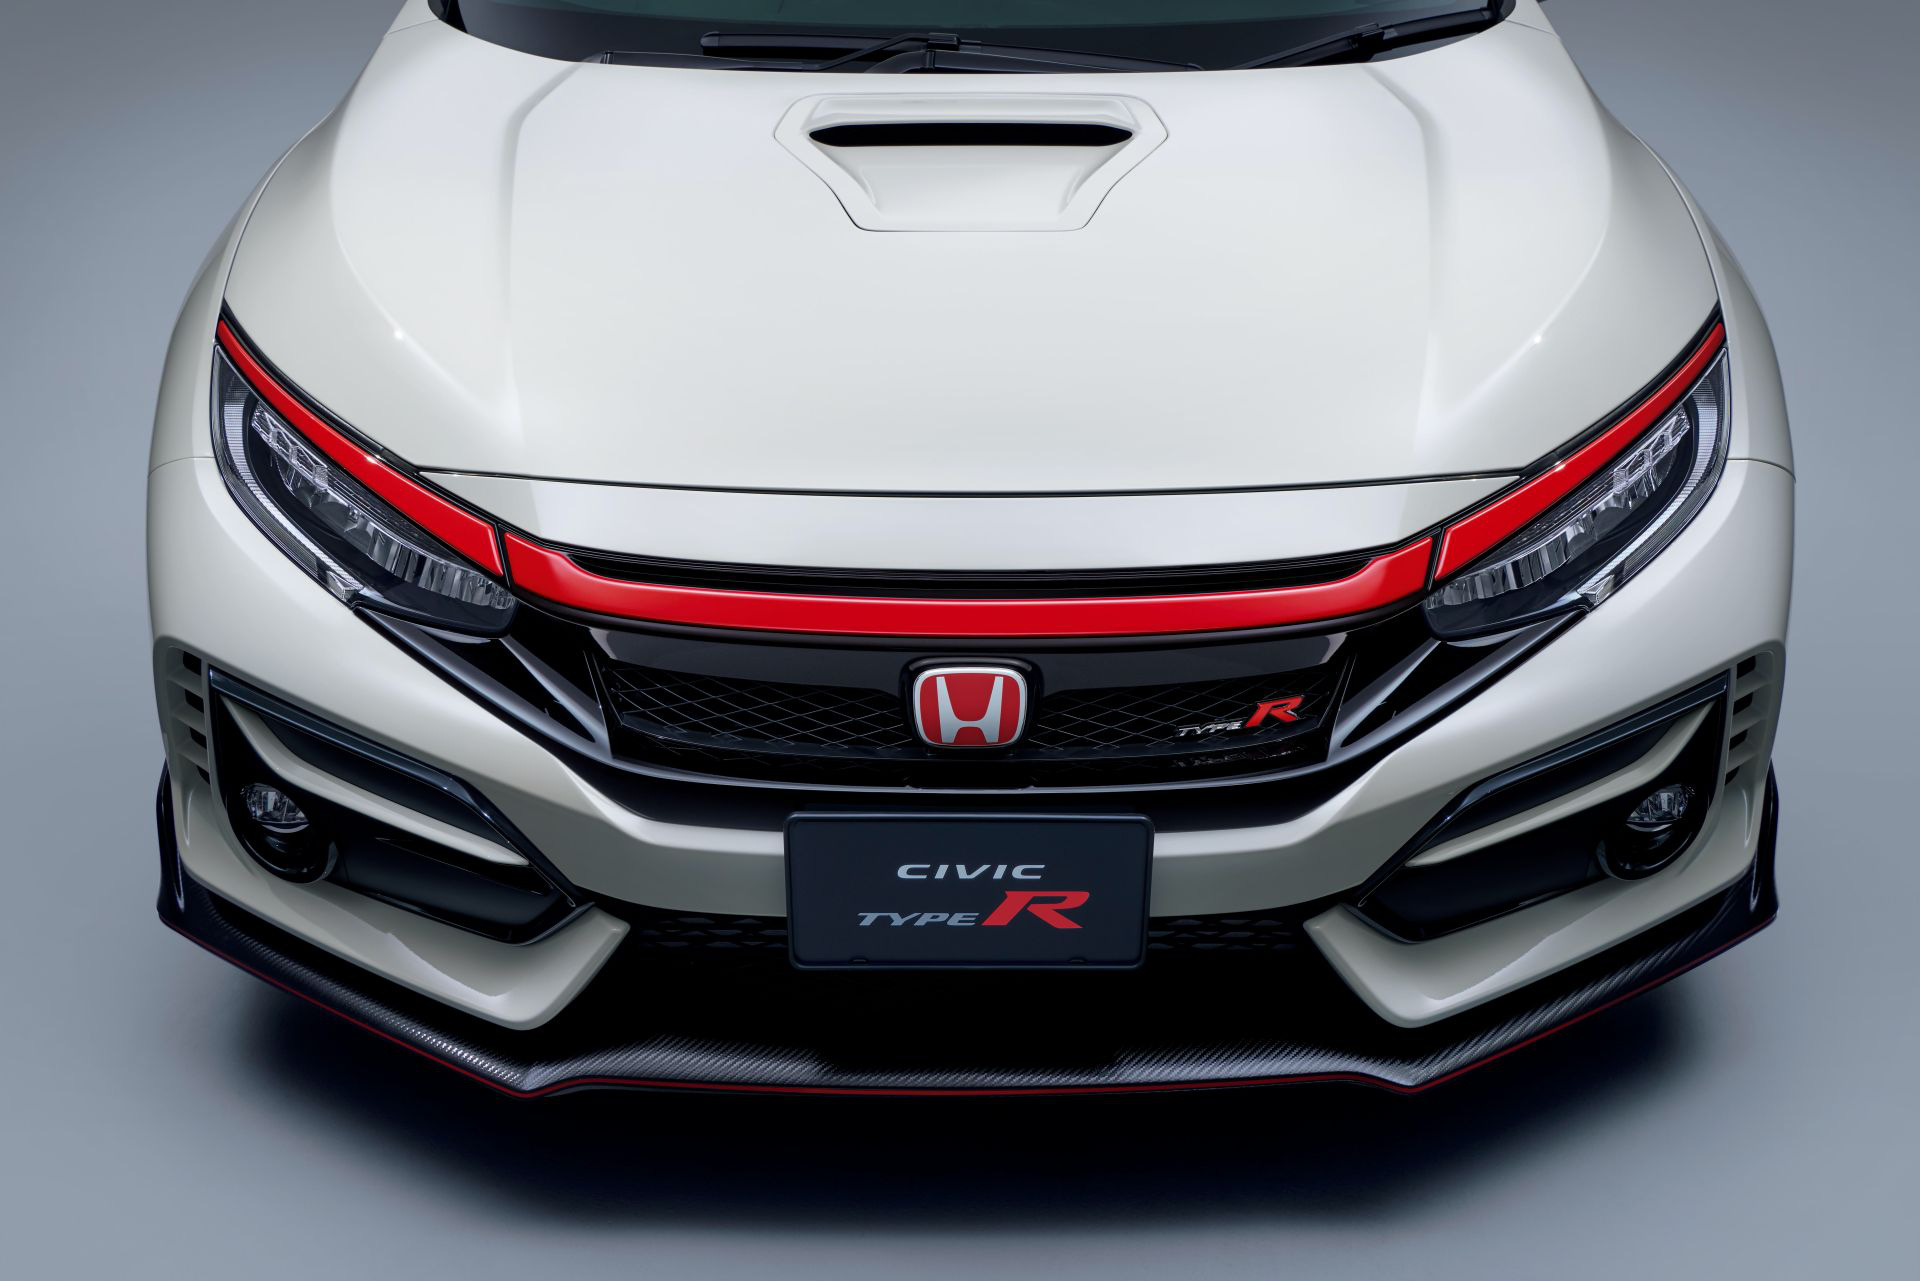 Honda nâng cấp nhẹ Civic Type R, bổ sung thêm đồ chơi - Ảnh 3.